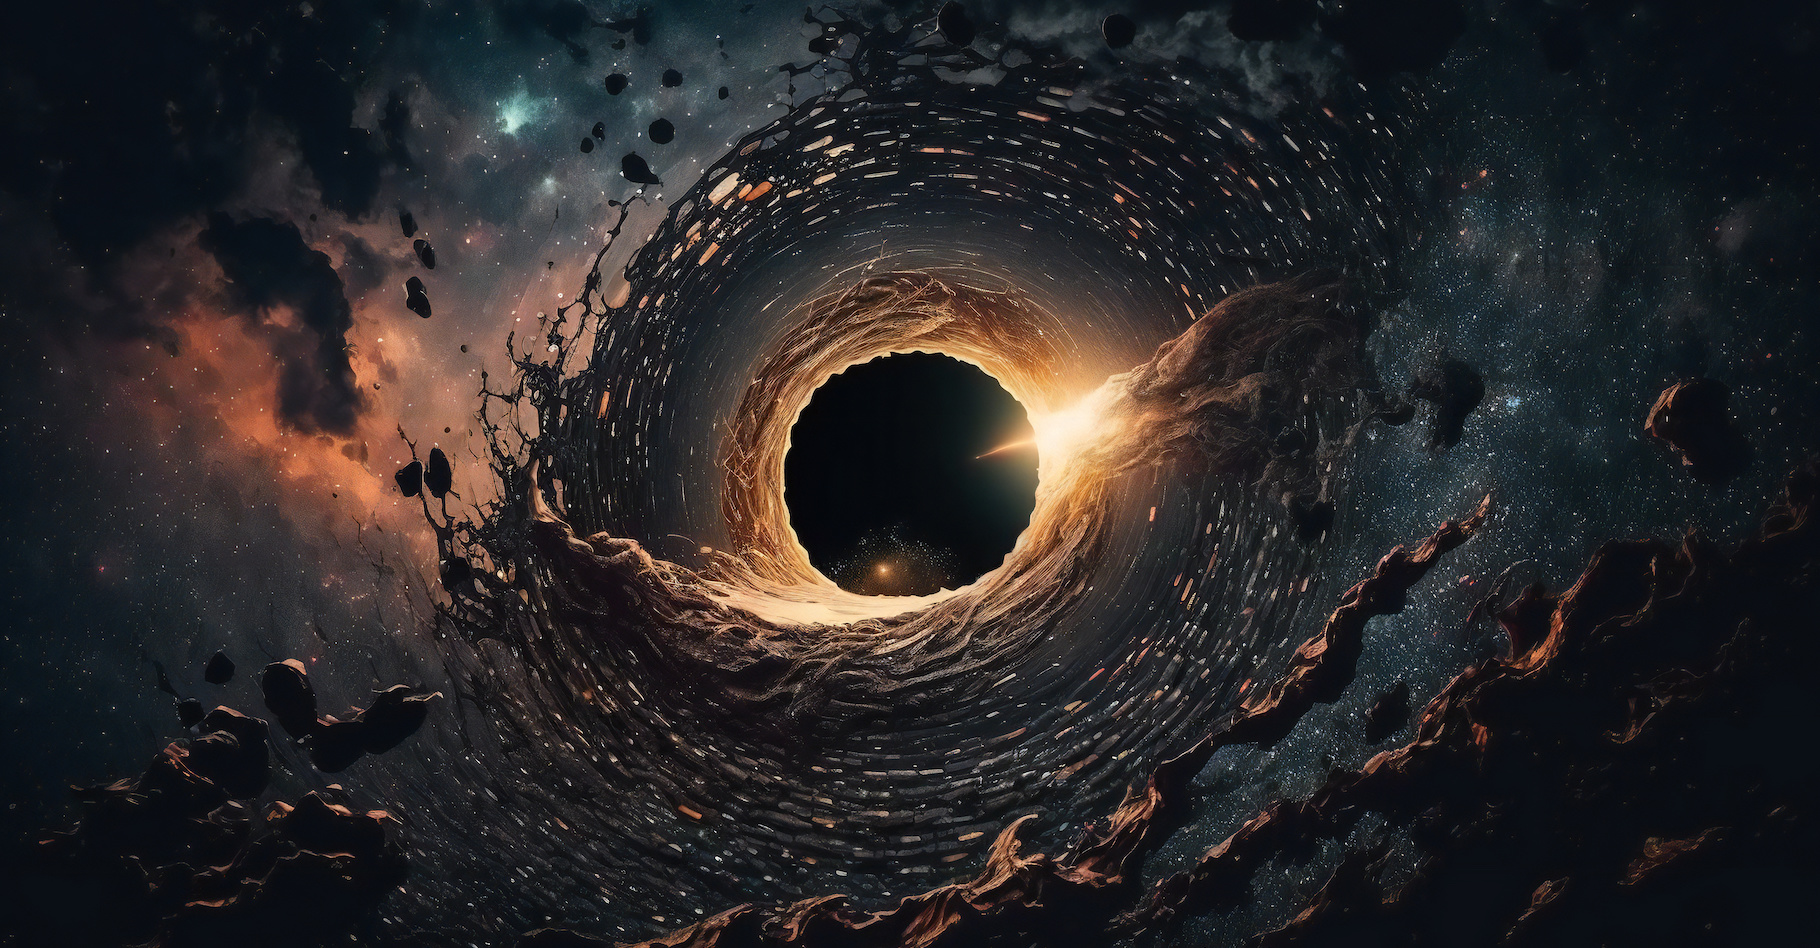 Des travaux menés à l’université du Colorado (États-Unis) suggèrent que d’immenses trous noirs supermassifs sont apparus tôt dans l’histoire de notre Univers. © The_AI-Revolution, Adobe Stock